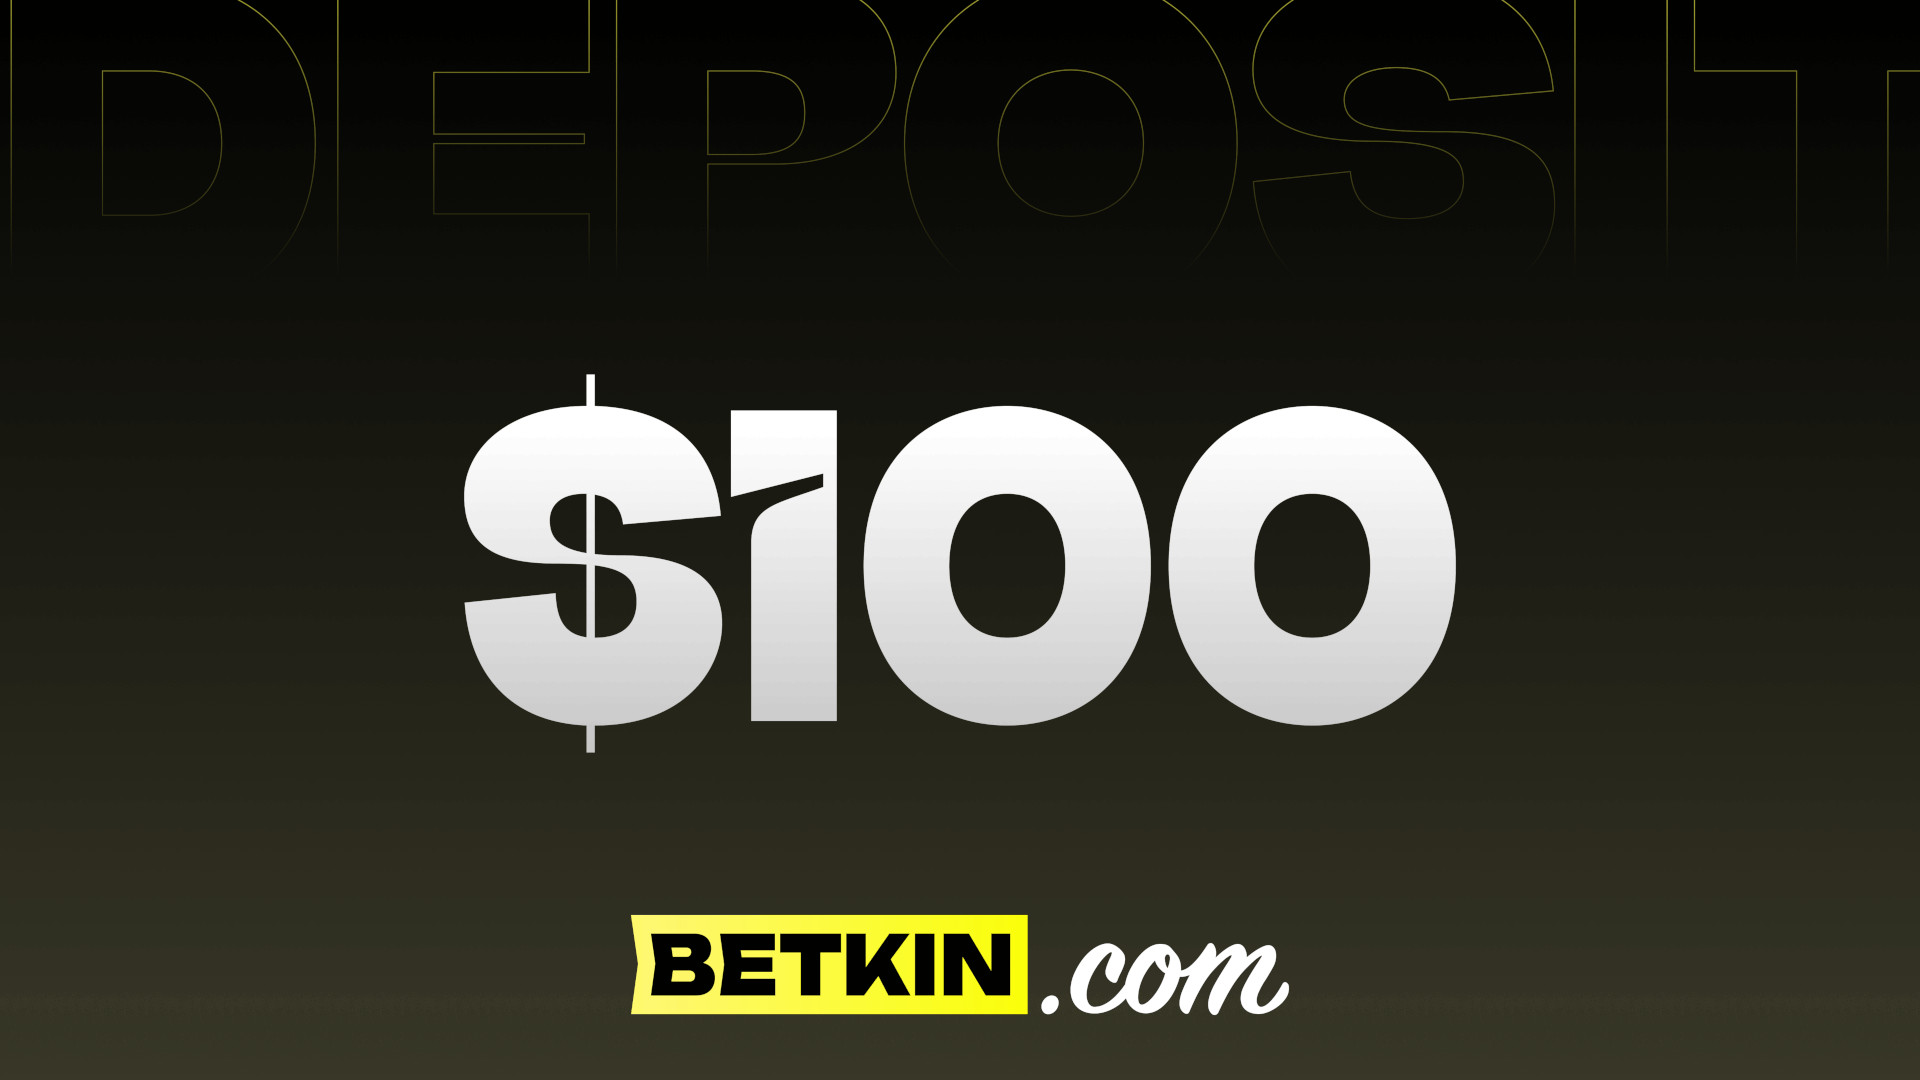 Betkin $100 Coupon, $111.35